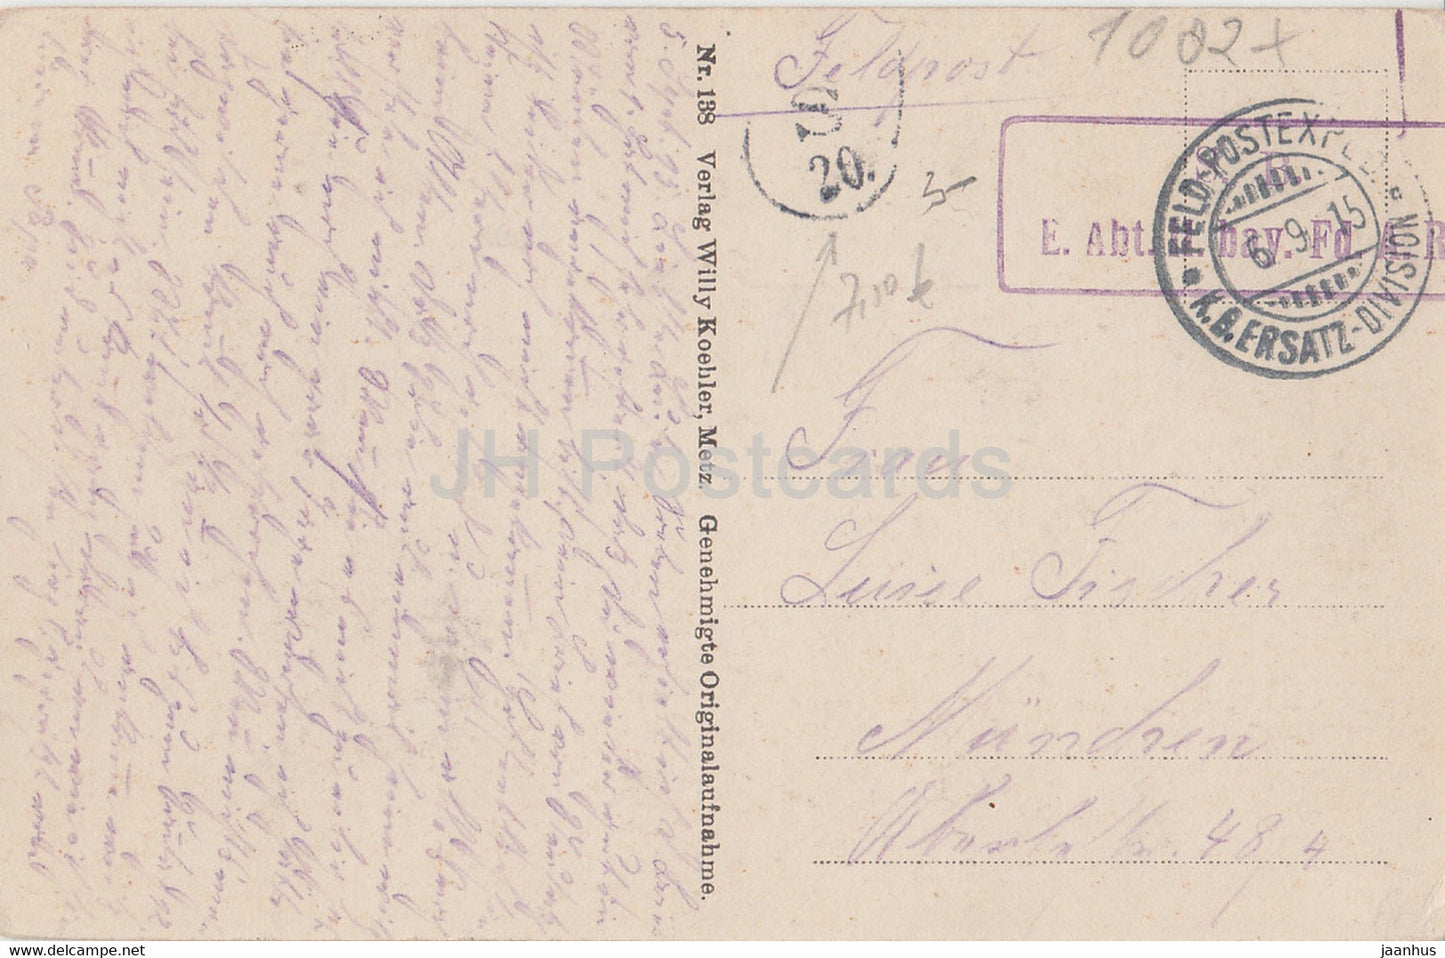 Neue Kriegsaufnahmen aus der Gegend von St. Mihiel - Feldpost - alte Postkarte - 1915 - Frankreich - gebraucht